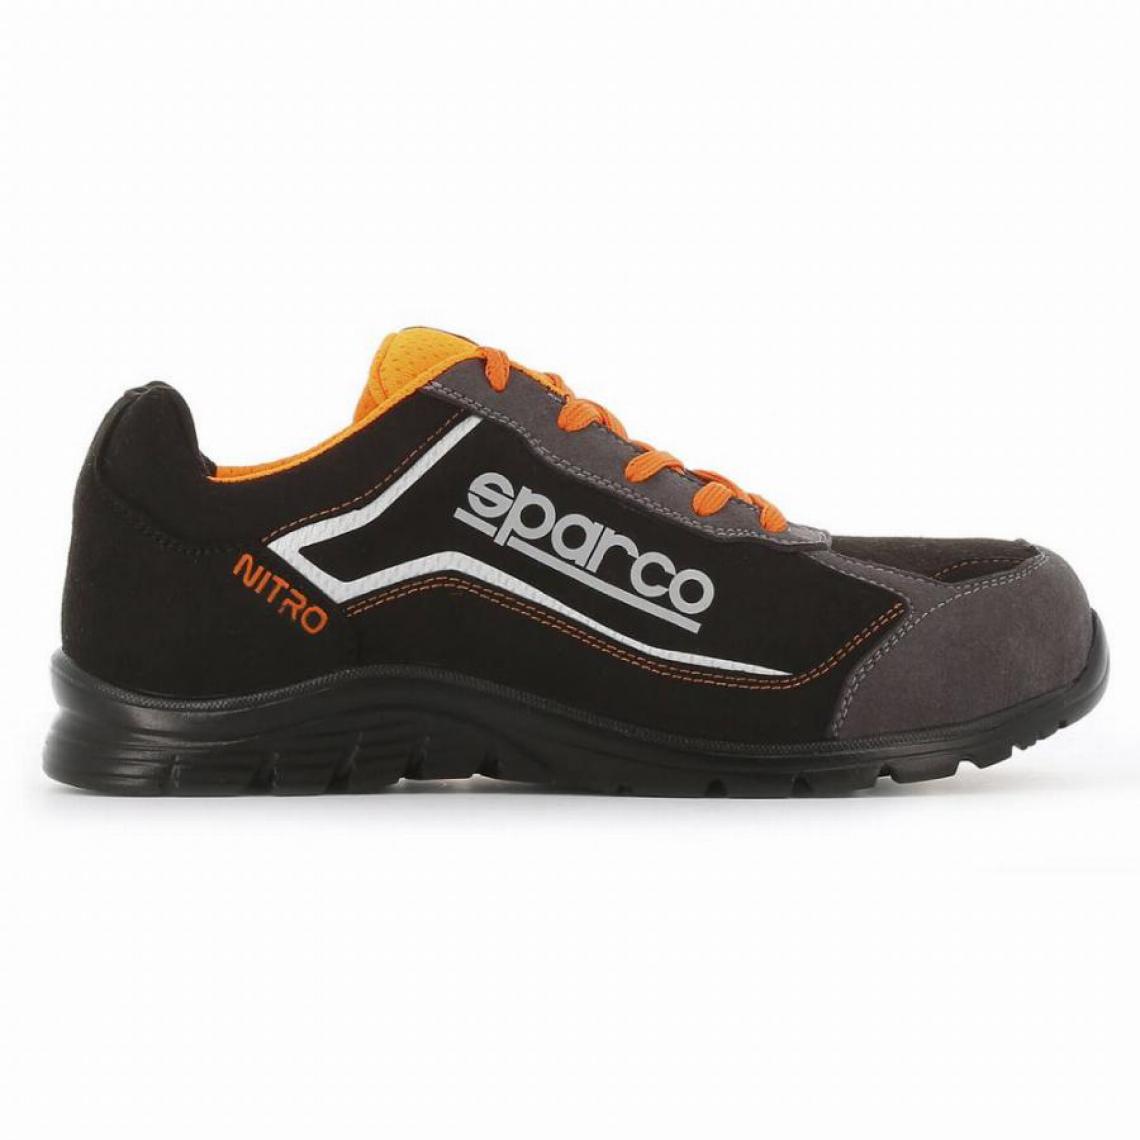 S 24 Bossi Industrie - Chaussure basse S3 Sparco Nitro S24 - orange et noir - taille 44 - NITRO 07522 NRGR - 44 - Equipement de Protection Individuelle